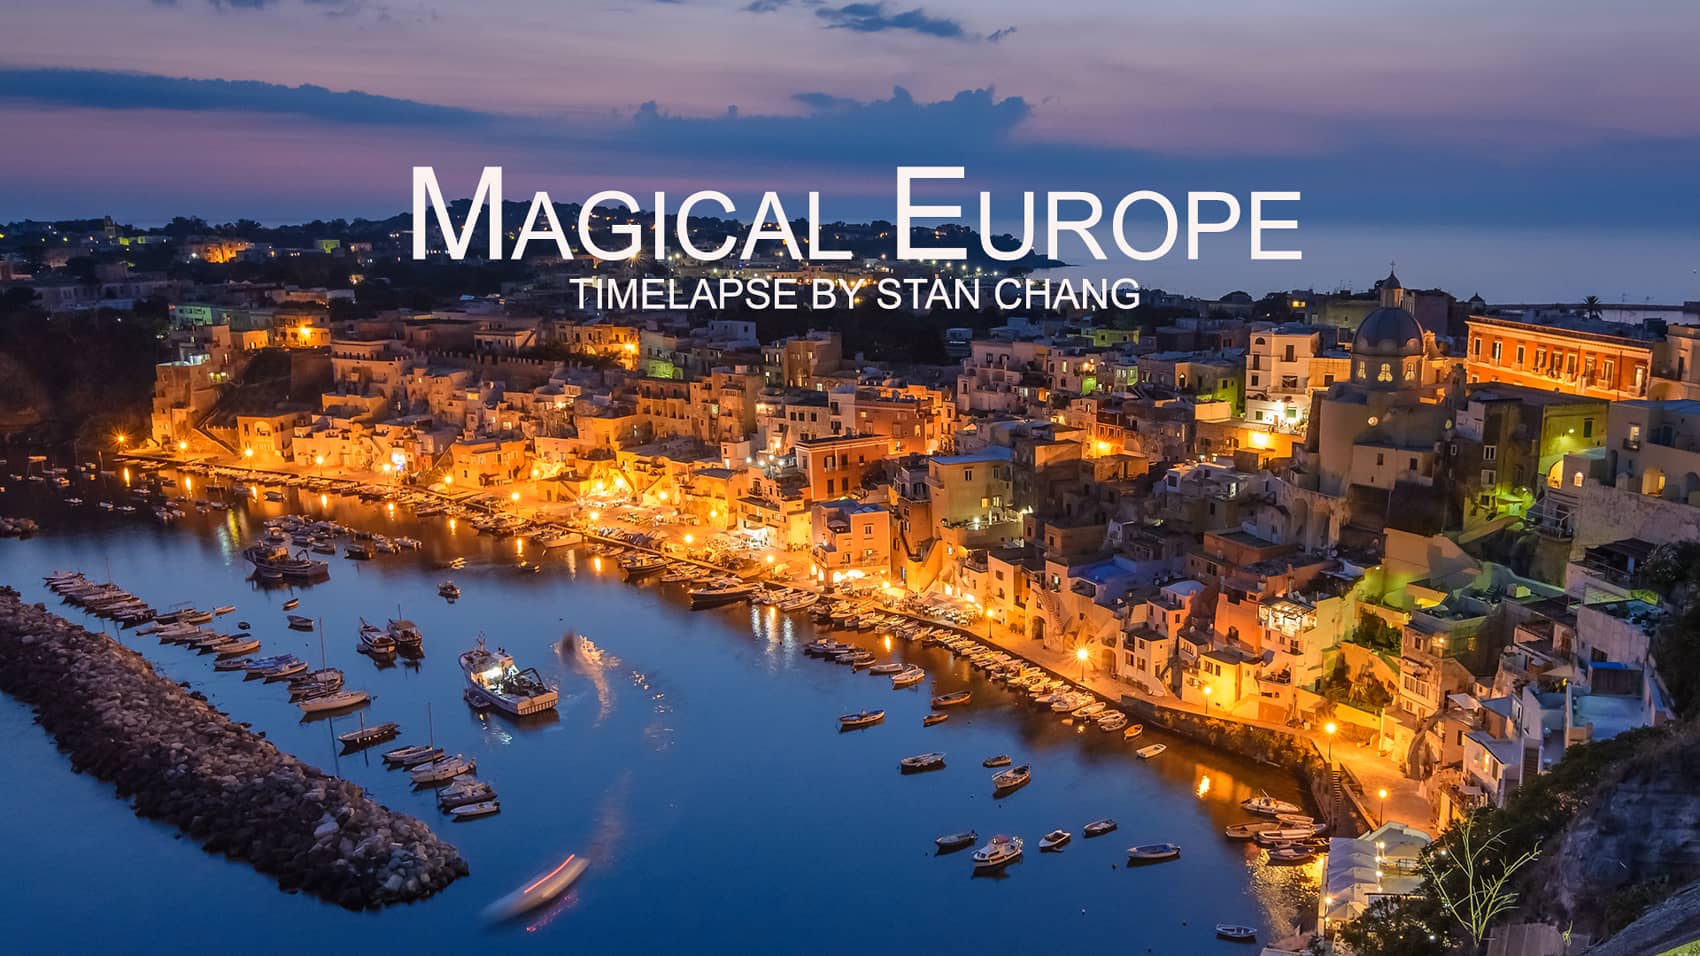 魔法の様に美しいヨーロッパの大自然や街並みがギュッと詰まったタイムラプス映像 Magical Europe Dna